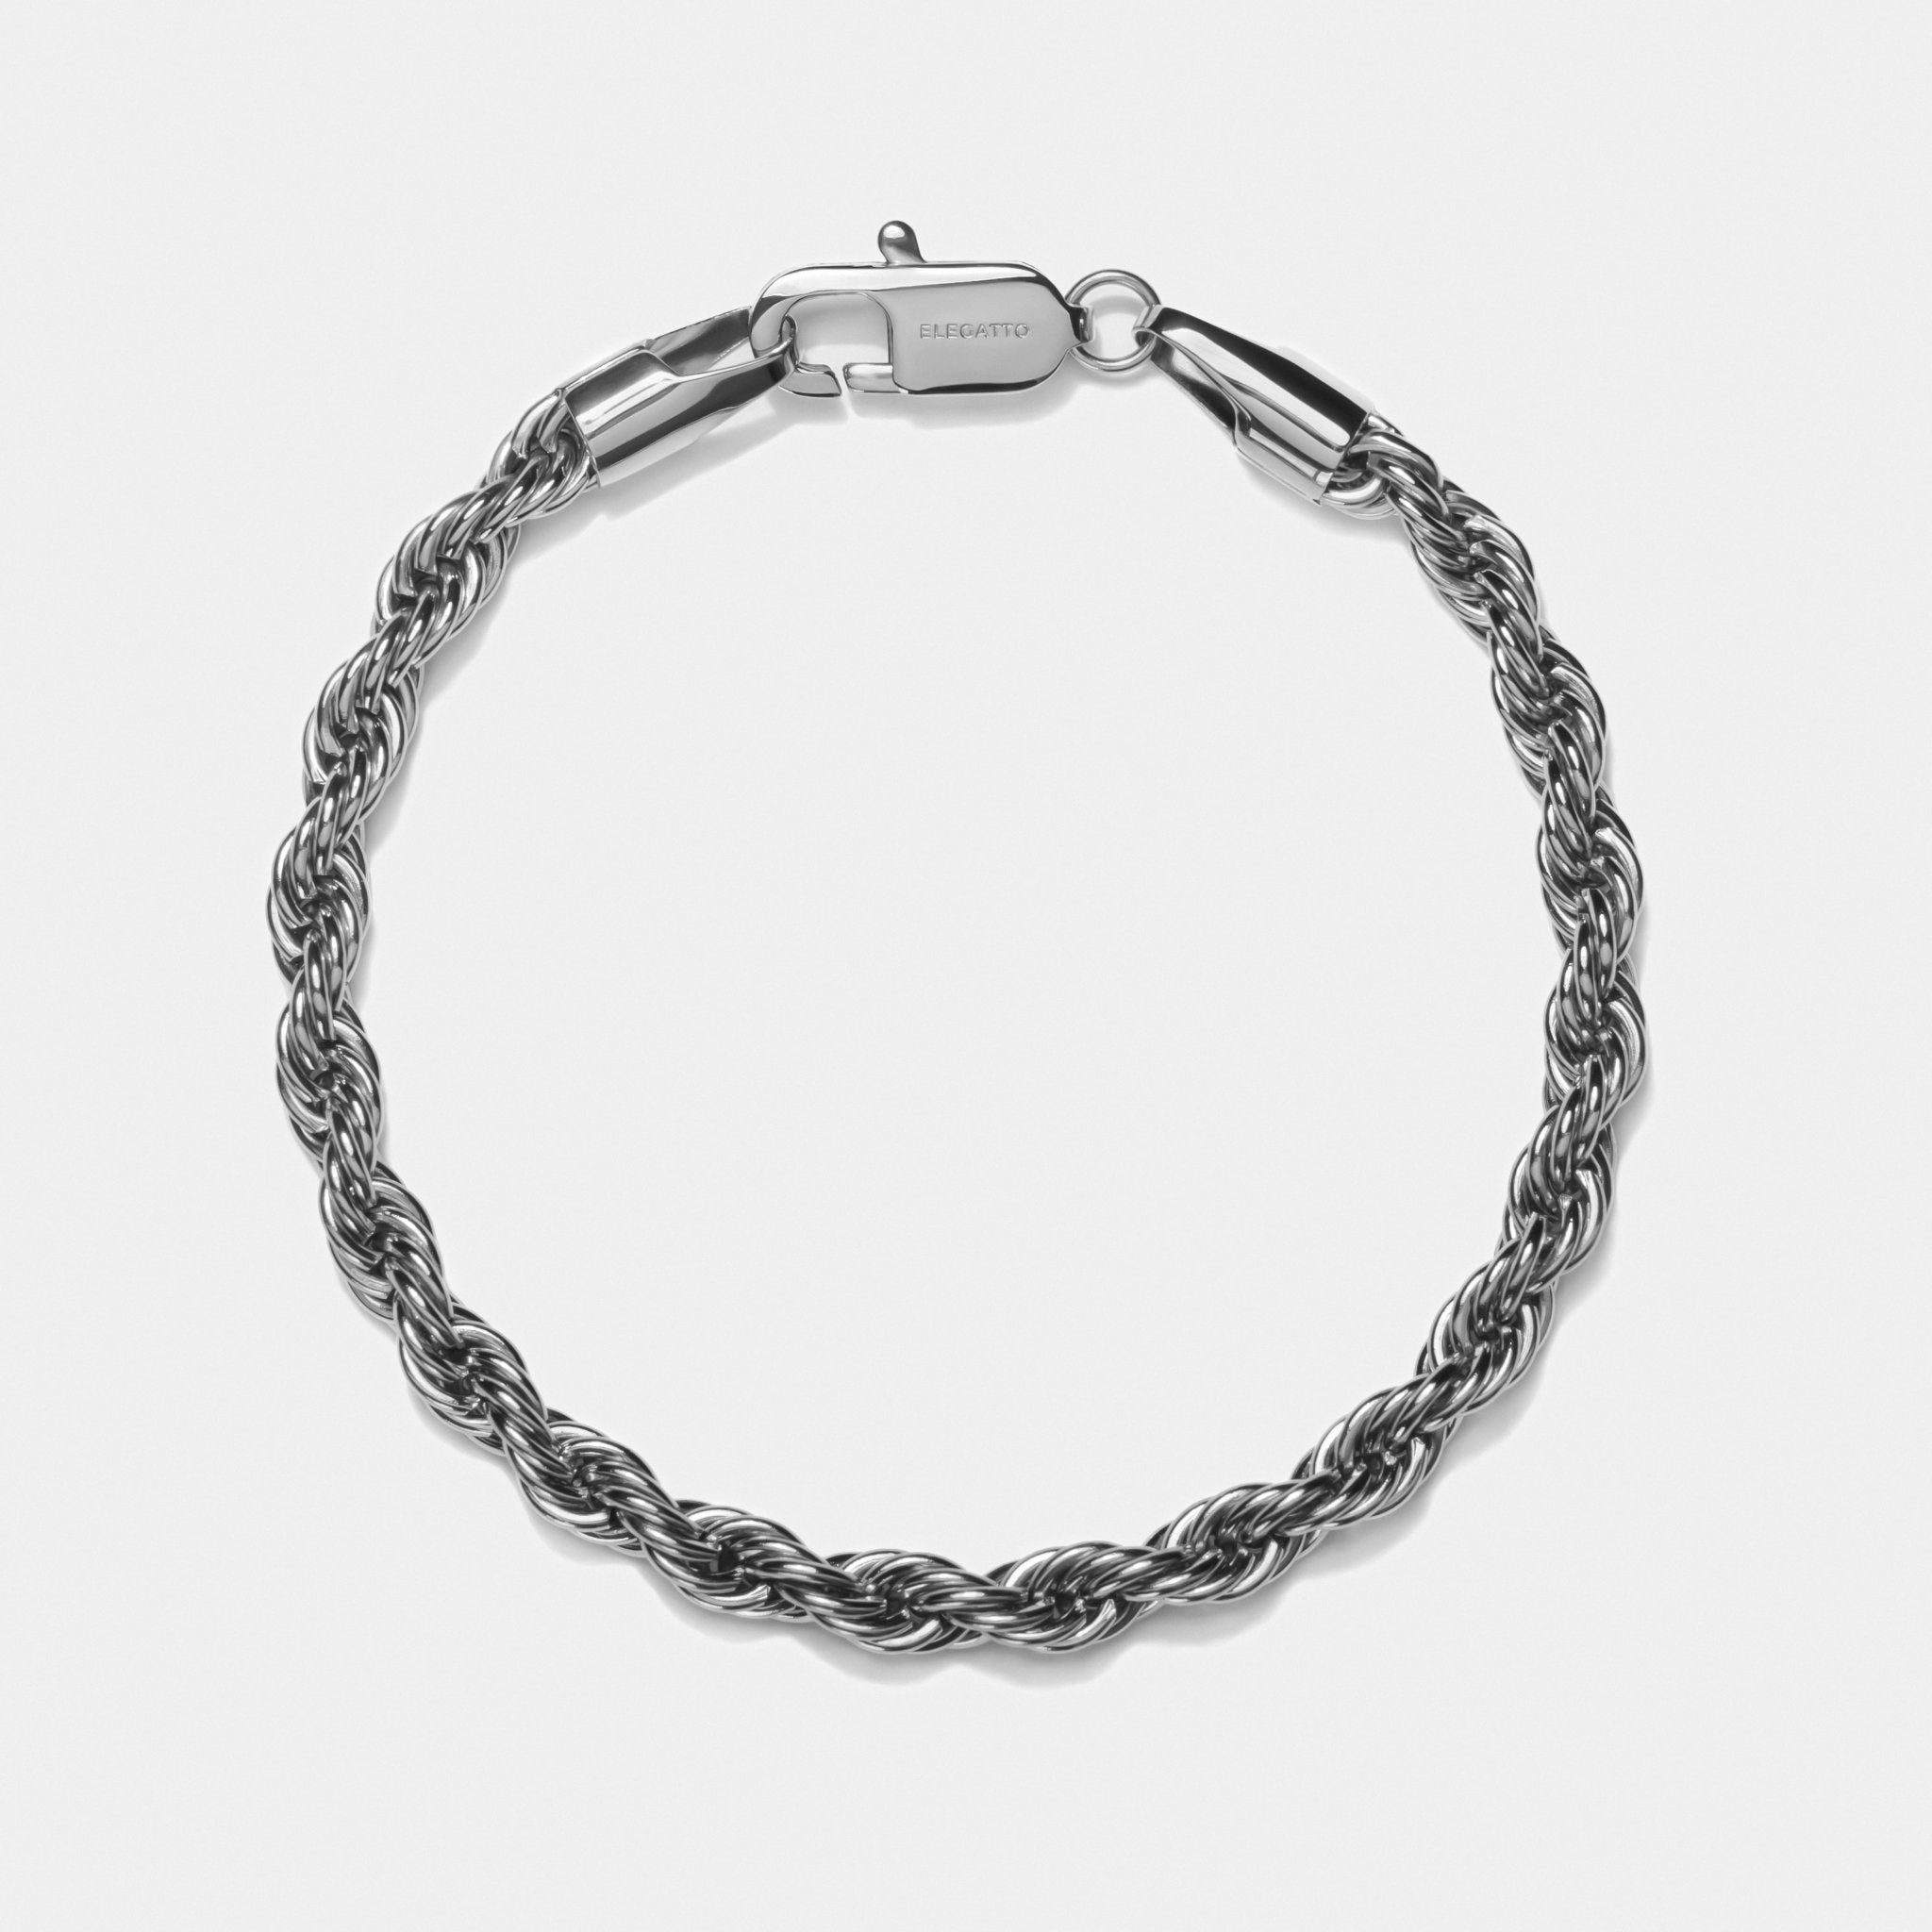 Rope Chain Bracelet Silver W - Elegatto